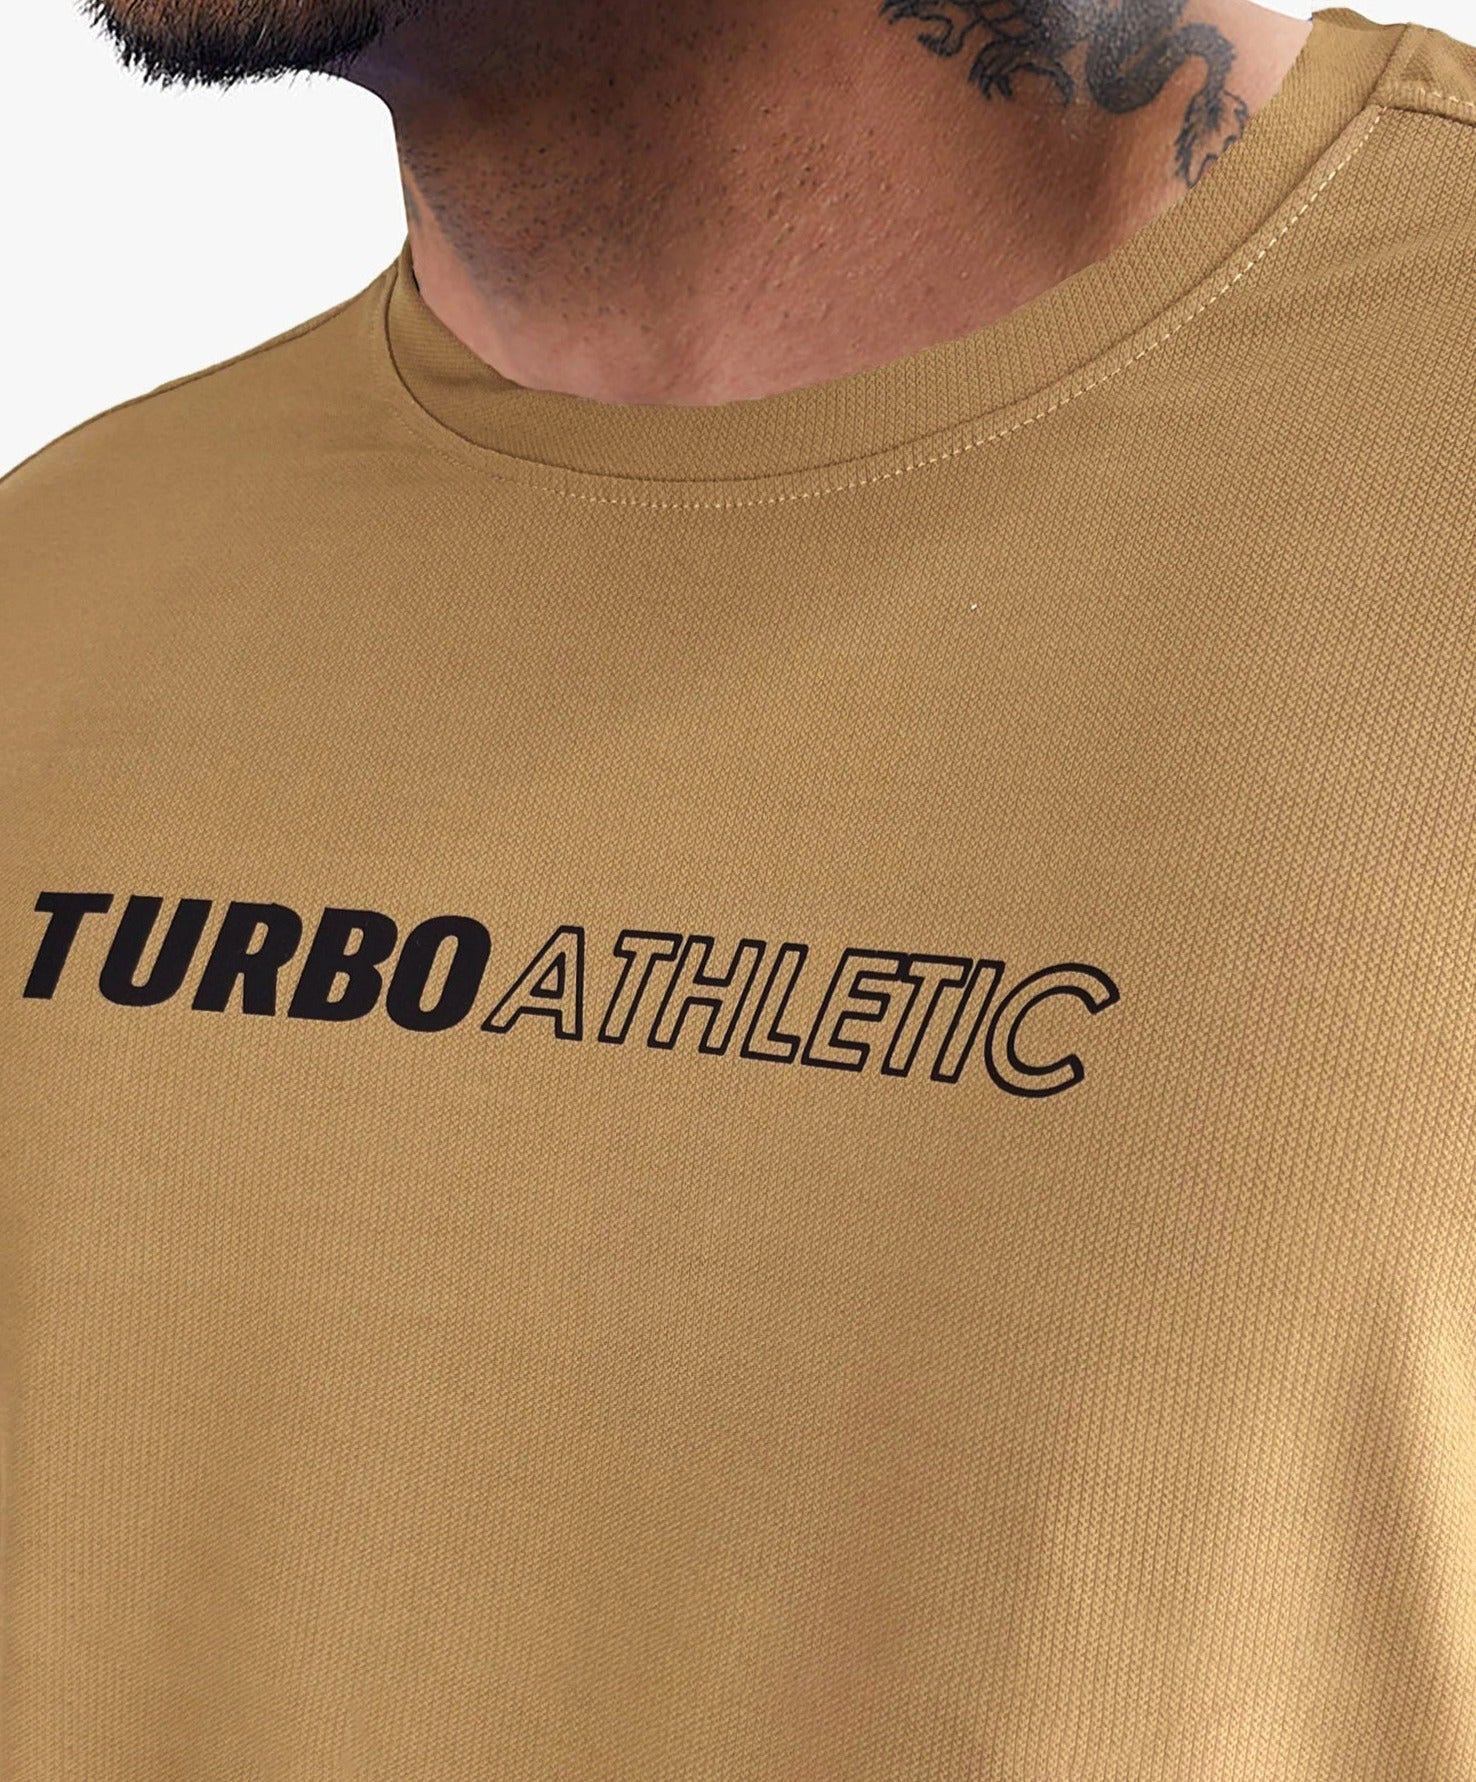 Turbo imp breathable dryfit Tee